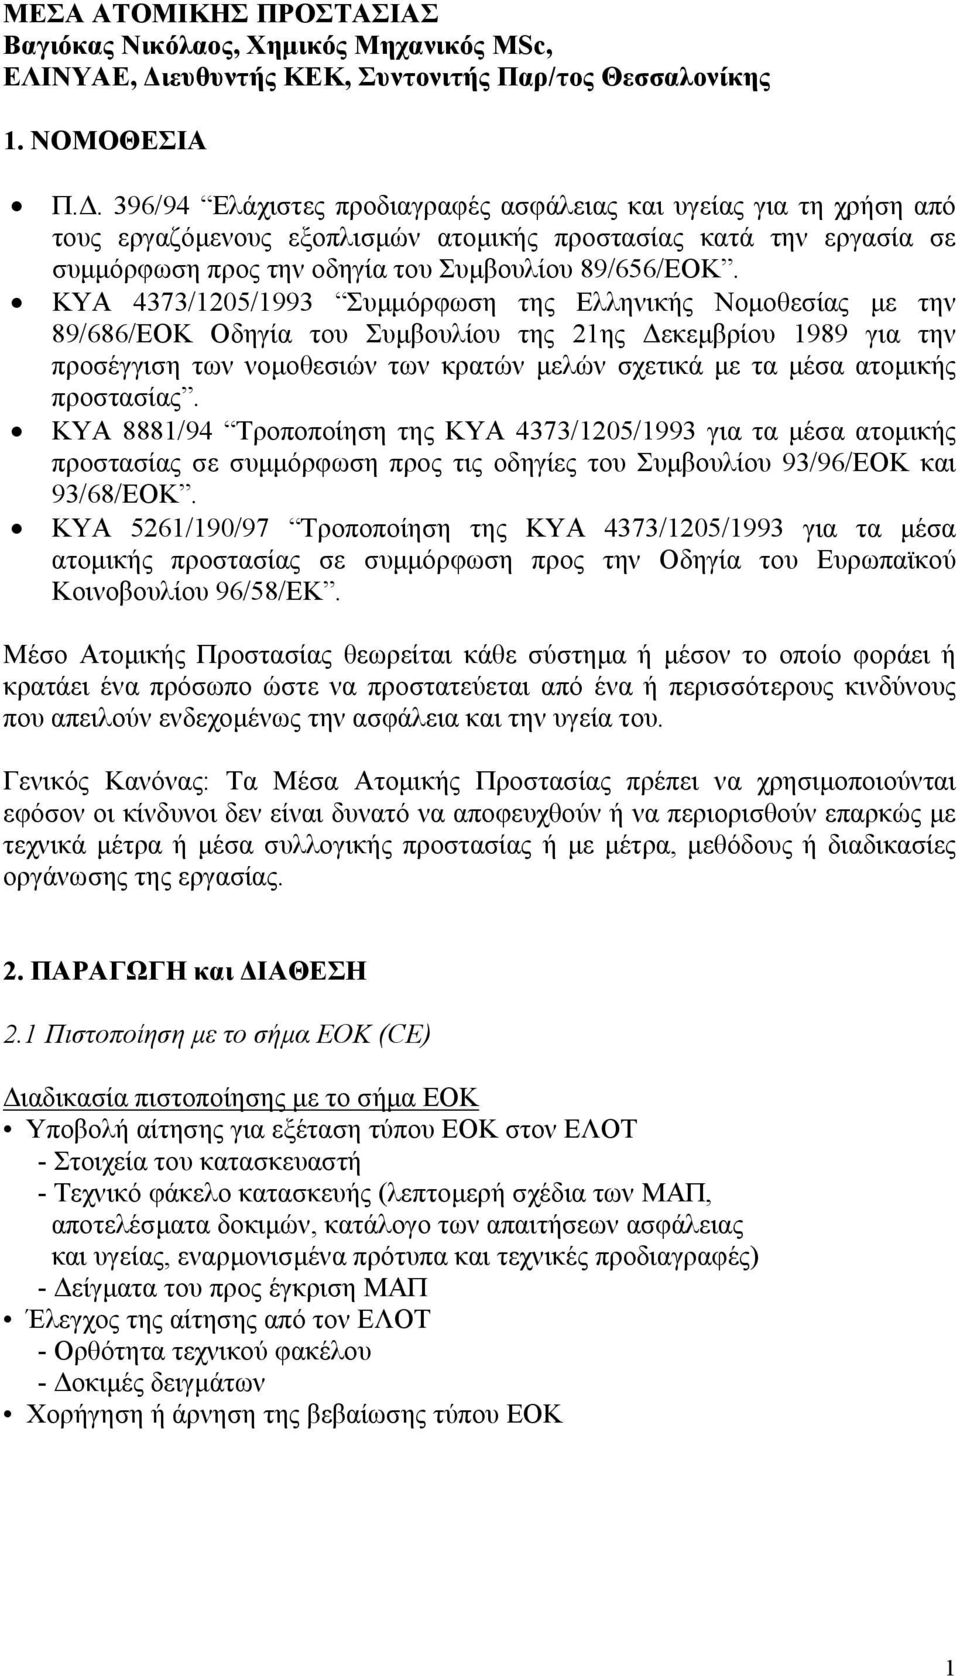 ΚΥΑ 4373/1205/1993 Συµµόρφωση της Ελληνικής Νοµοθεσίας µε την 89/686/ΕΟΚ Οδηγία του Συµβουλίου της 21ης εκεµβρίου 1989 για την προσέγγιση των νοµοθεσιών των κρατών µελών σχετικά µε τα µέσα ατοµικής